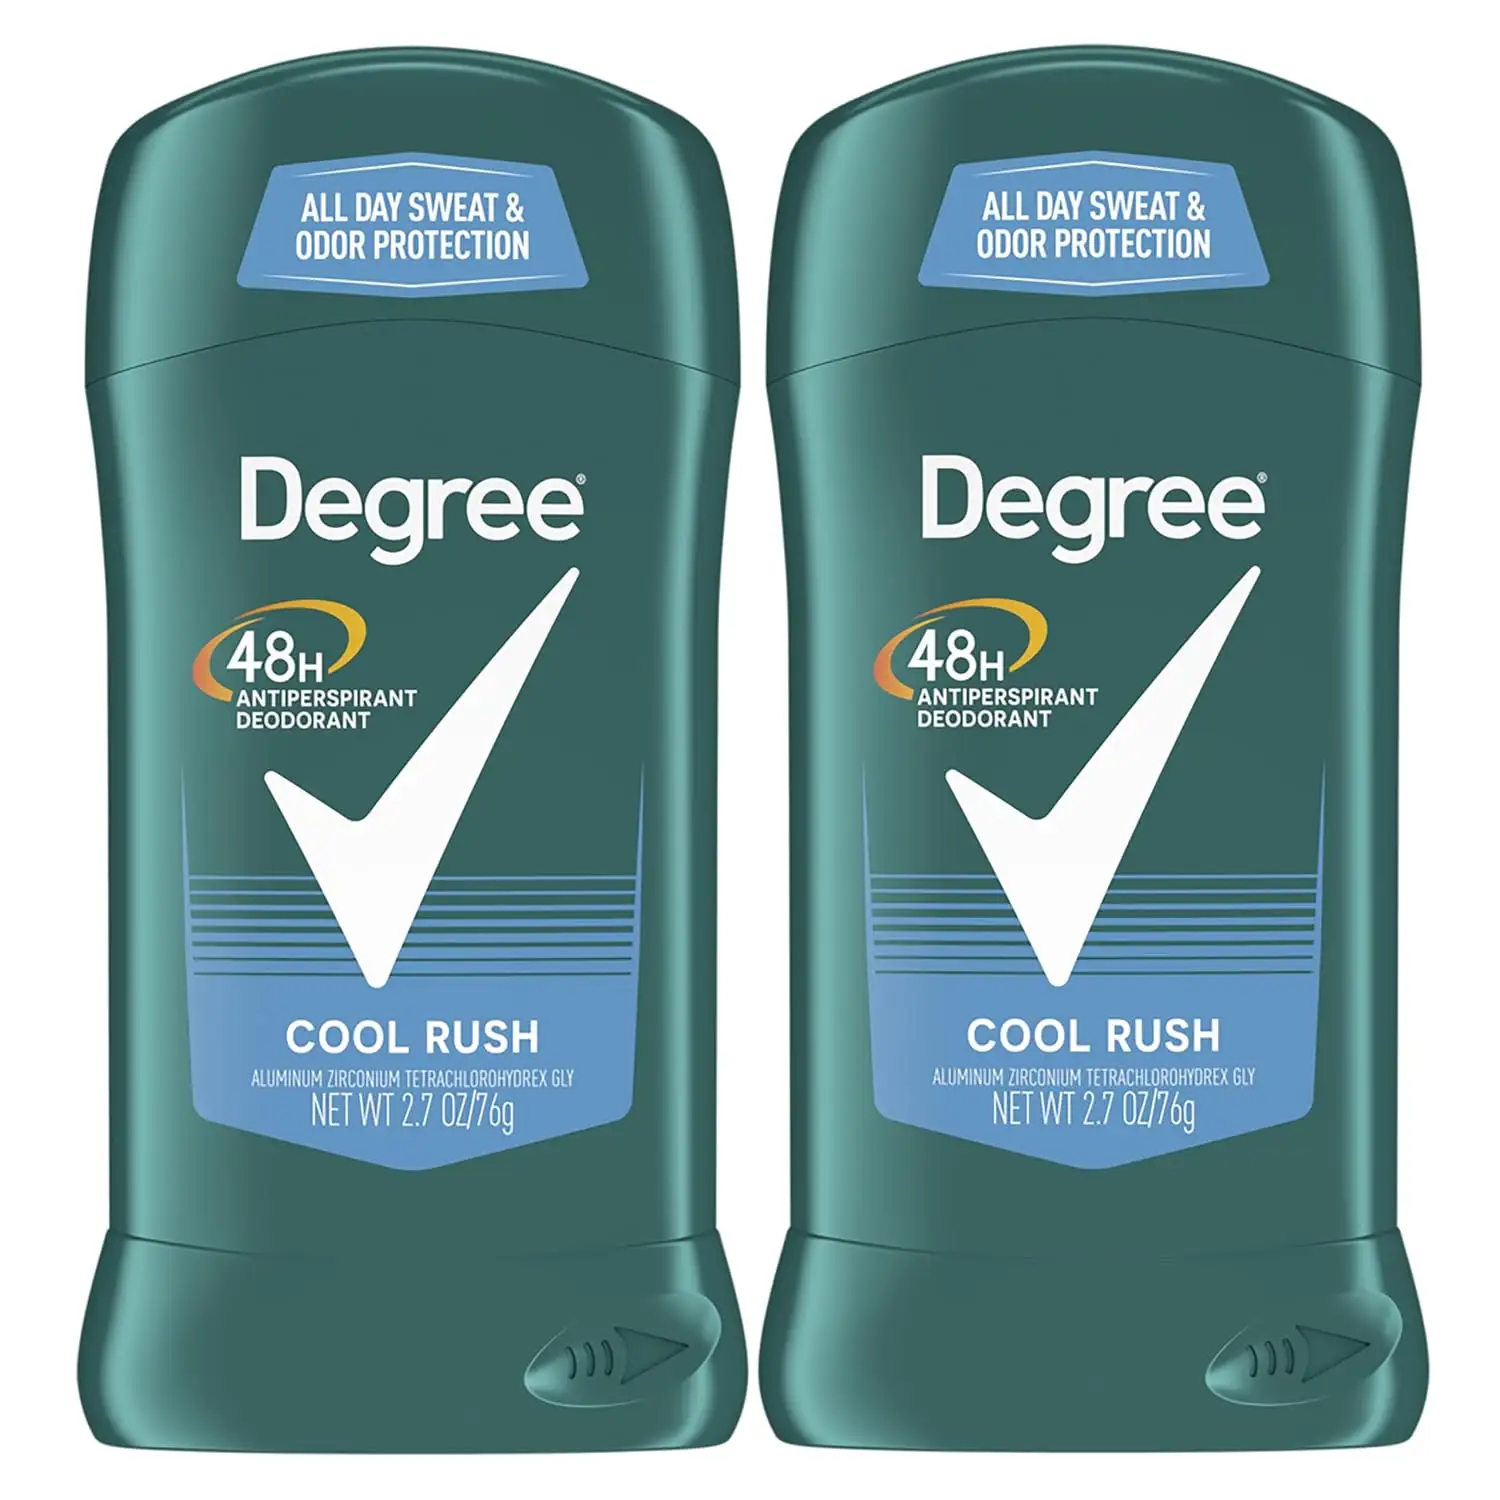 Men Original Antiperspirant Deodorant for Men, Pack of 2, 48-Hour Sweat and Odor Protection, Cool Rush 2.7 oz